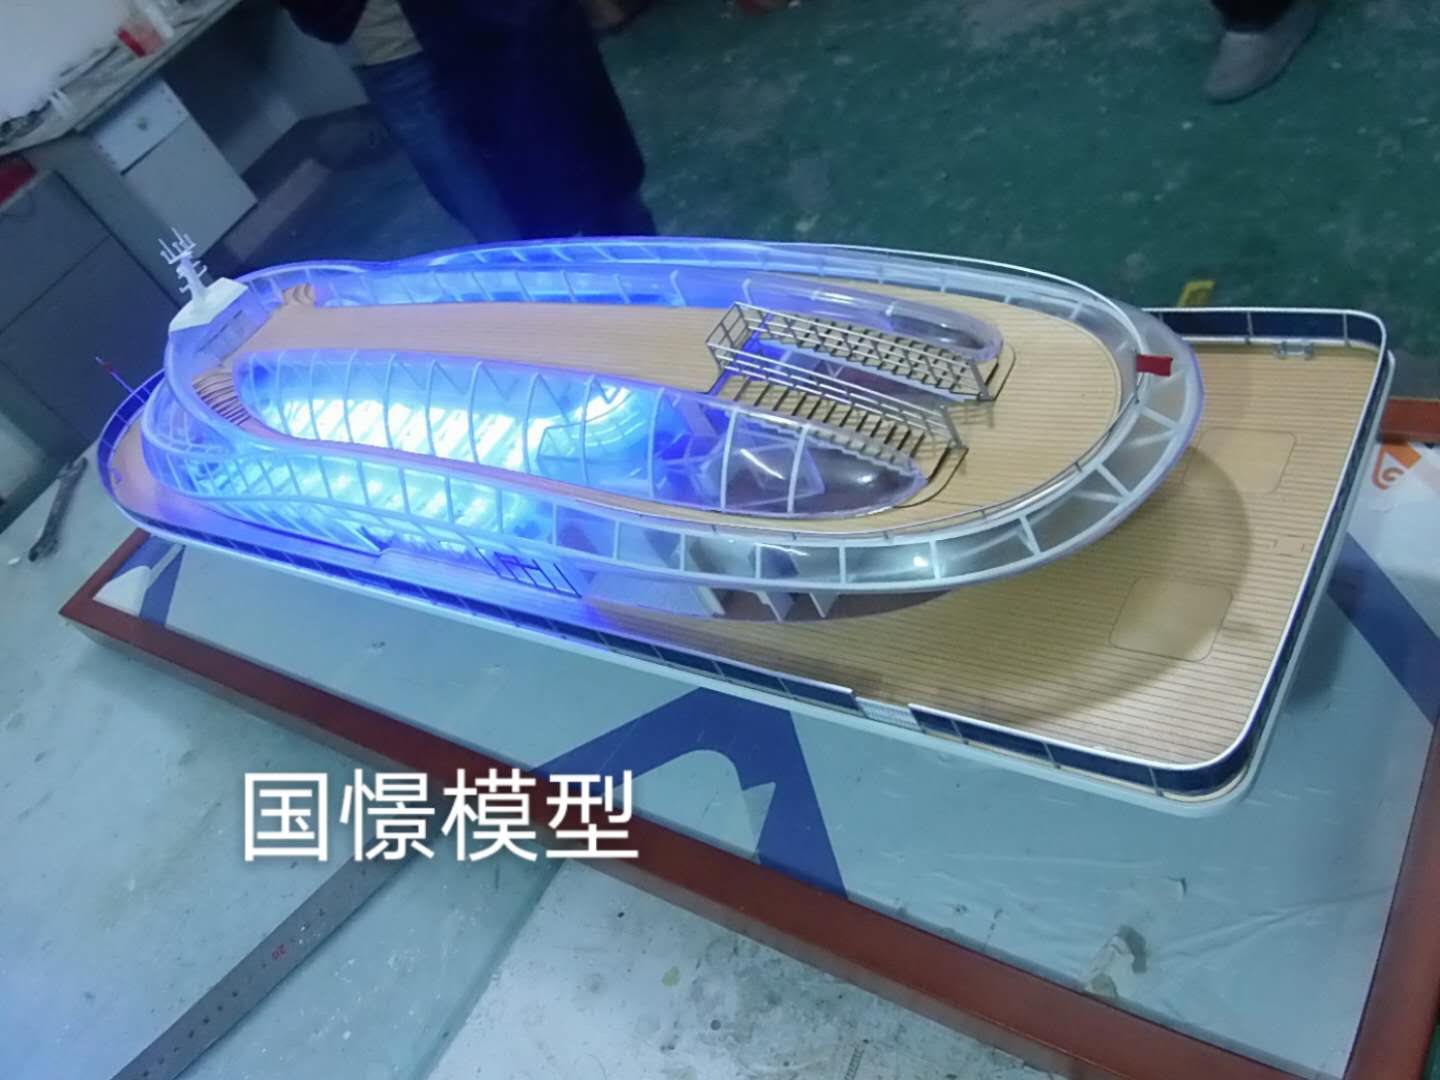 织金县船舶模型